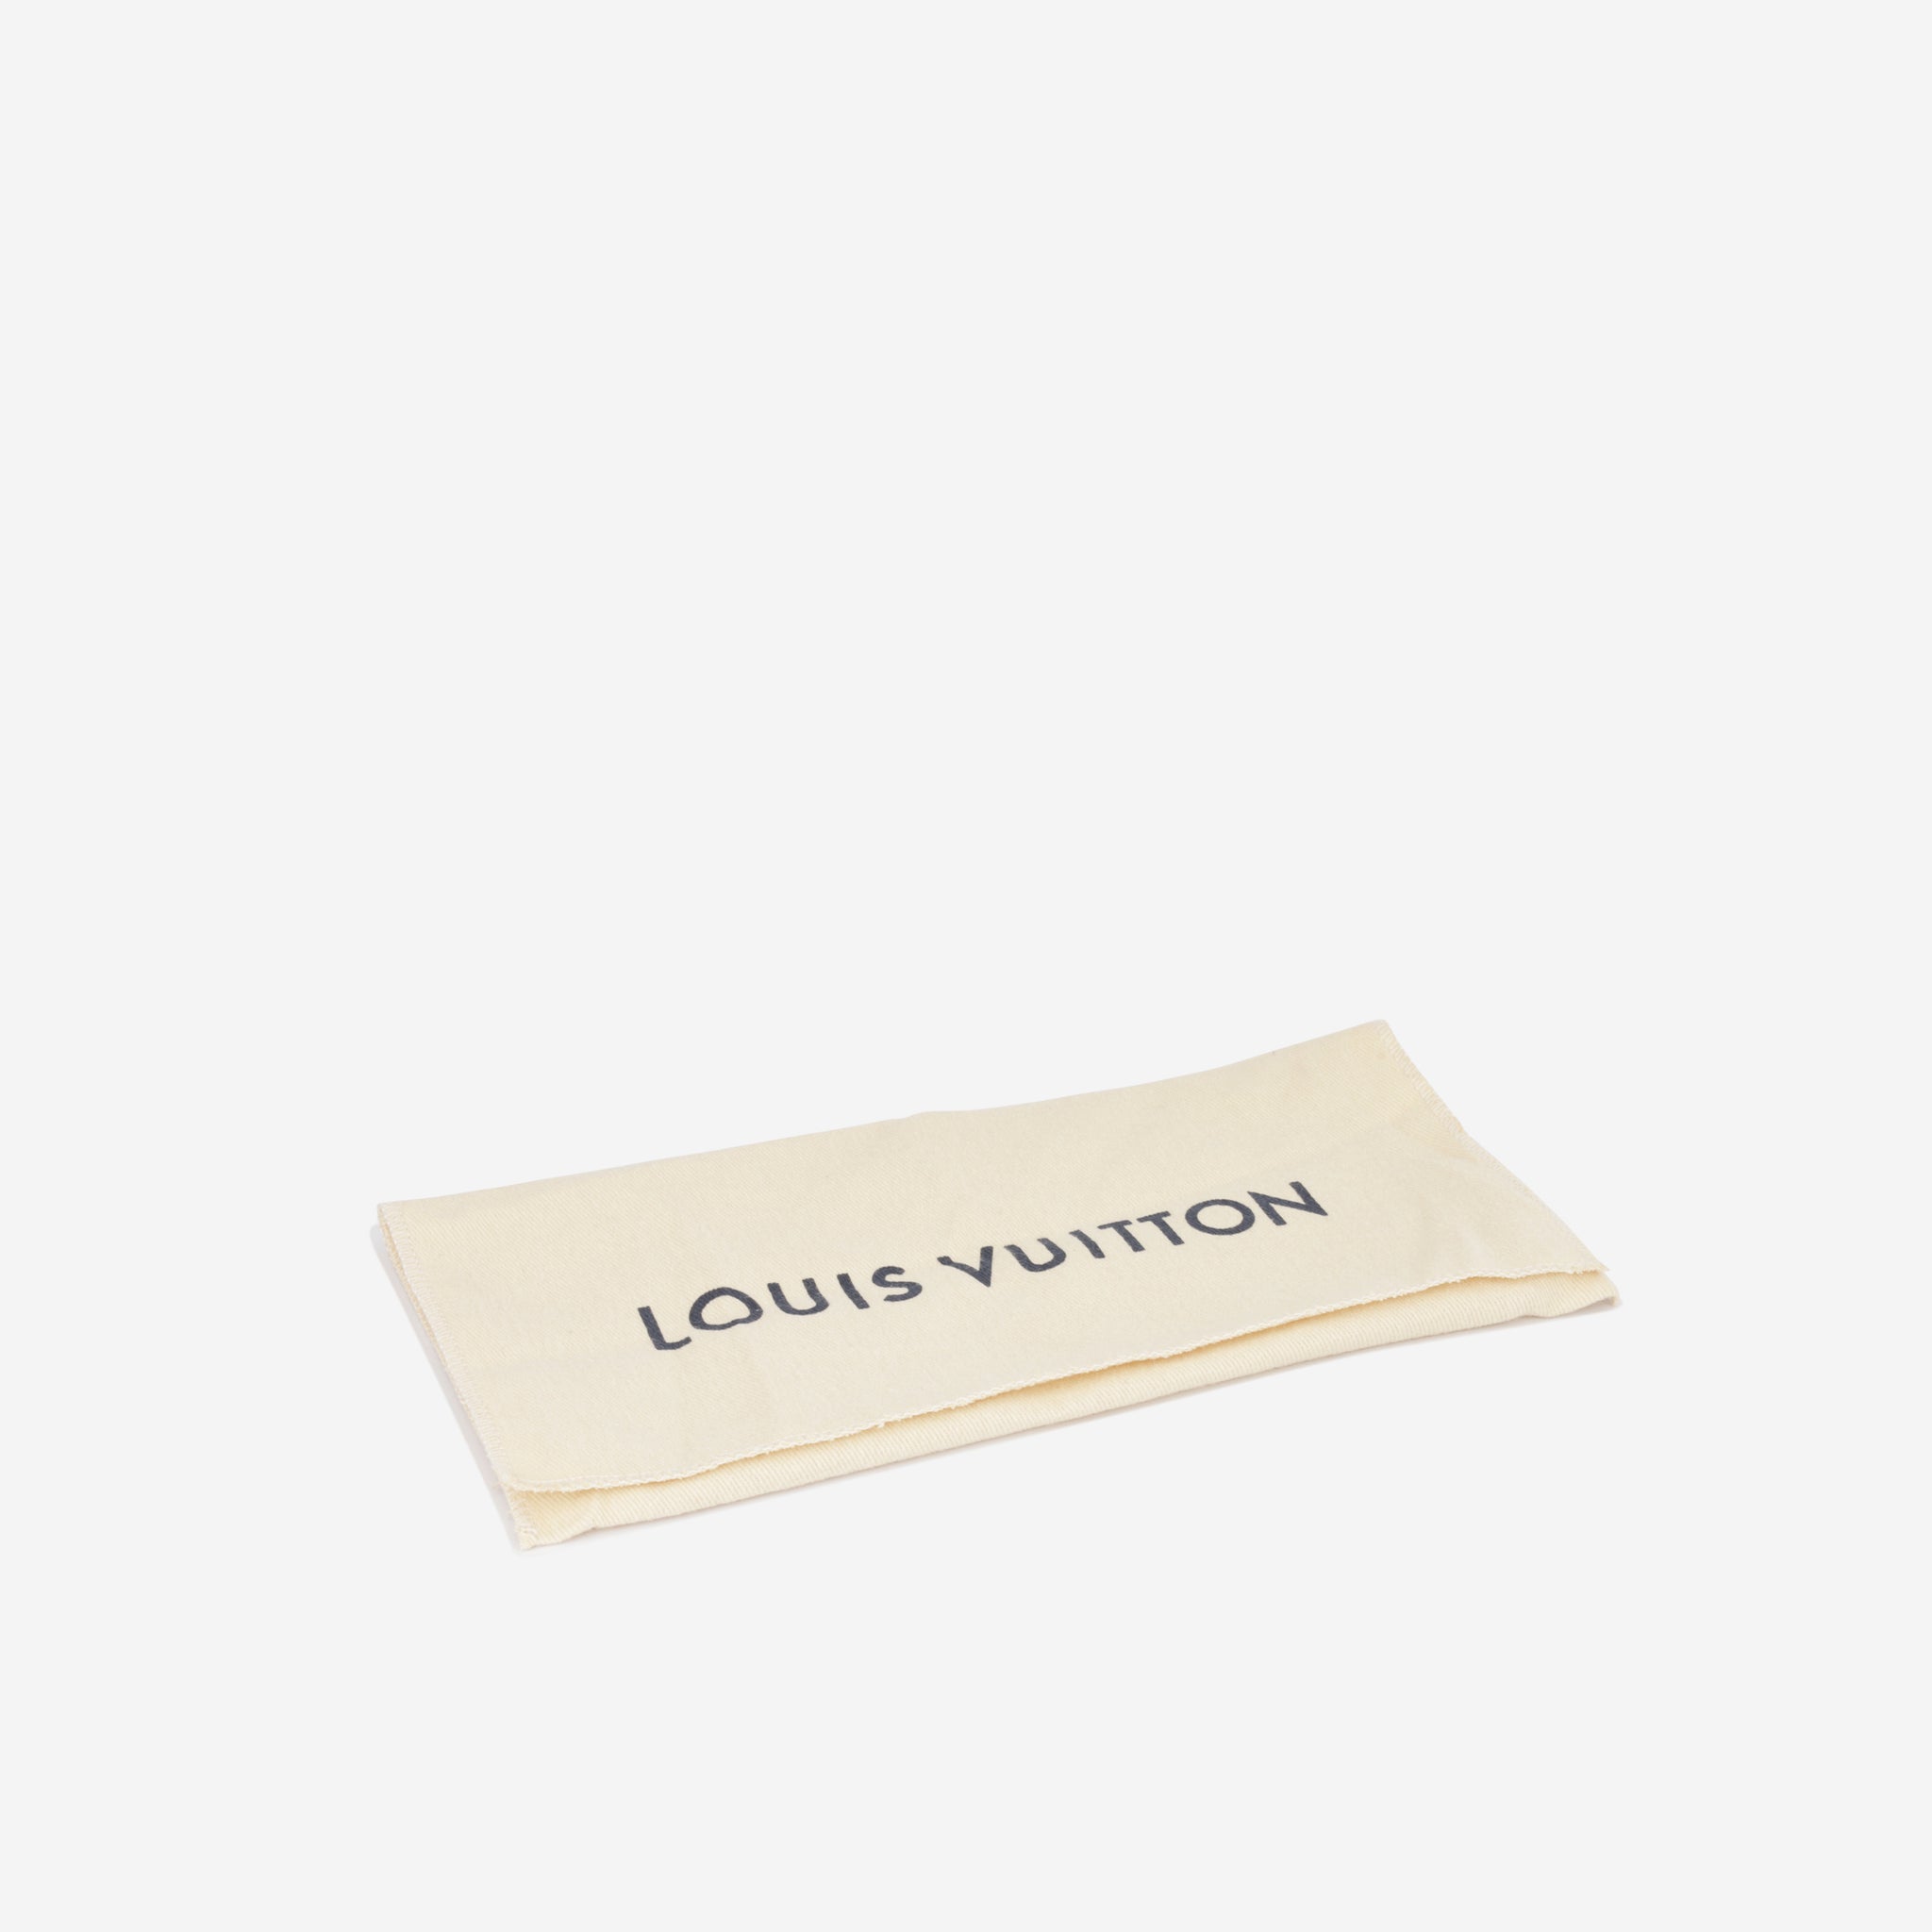 Louis Vuitton - Sarah Wallet - Monogram Empreinte - GHW - Pre Loved